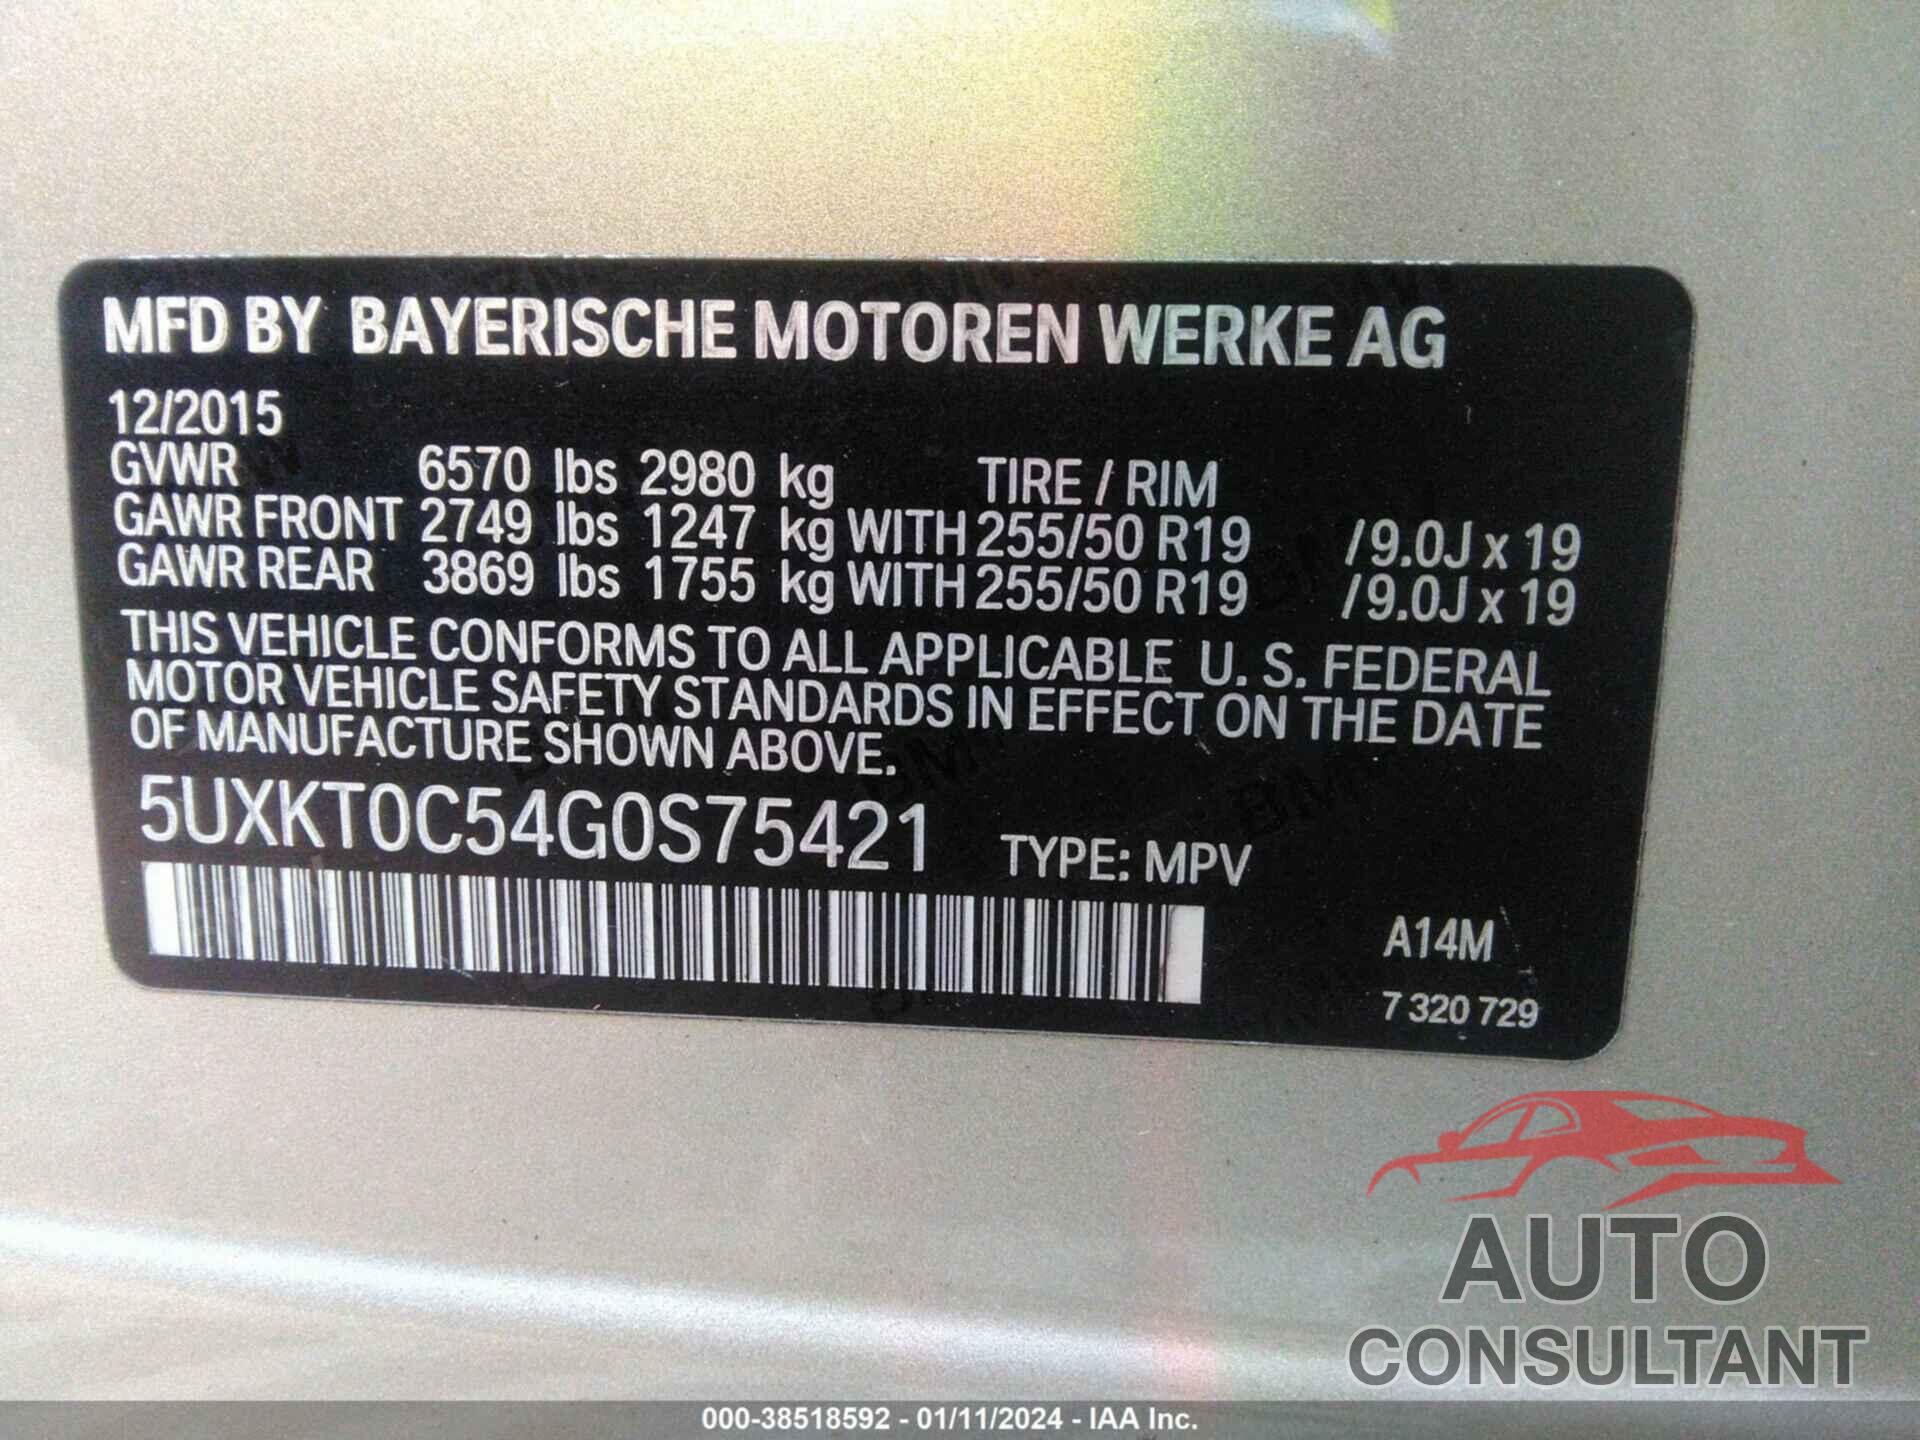 BMW X5 EDRIVE 2016 - 5UXKT0C54G0S75421